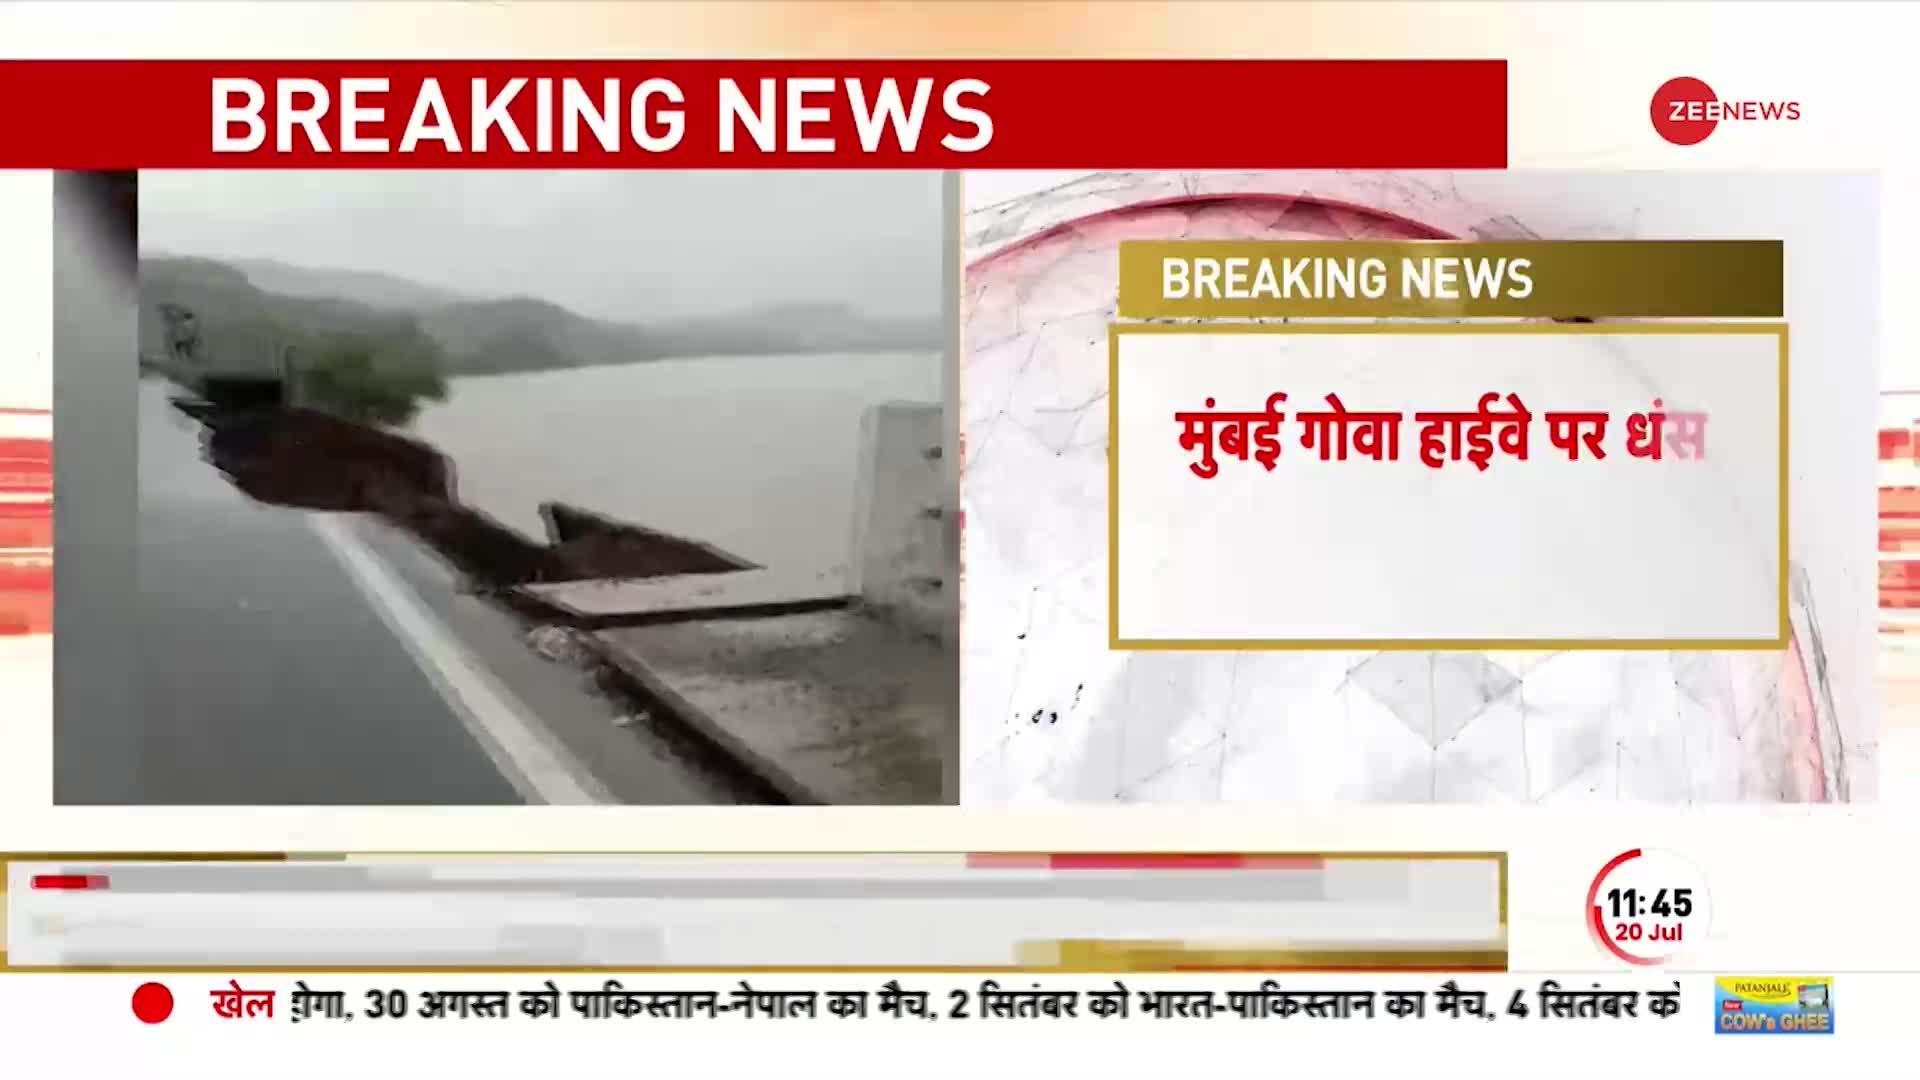 Maharashtra Breaking: Mumbai-Goa Highway पर धंसी सड़क, बारिश के कारण नदी किनारे बनीं सड़क ढही